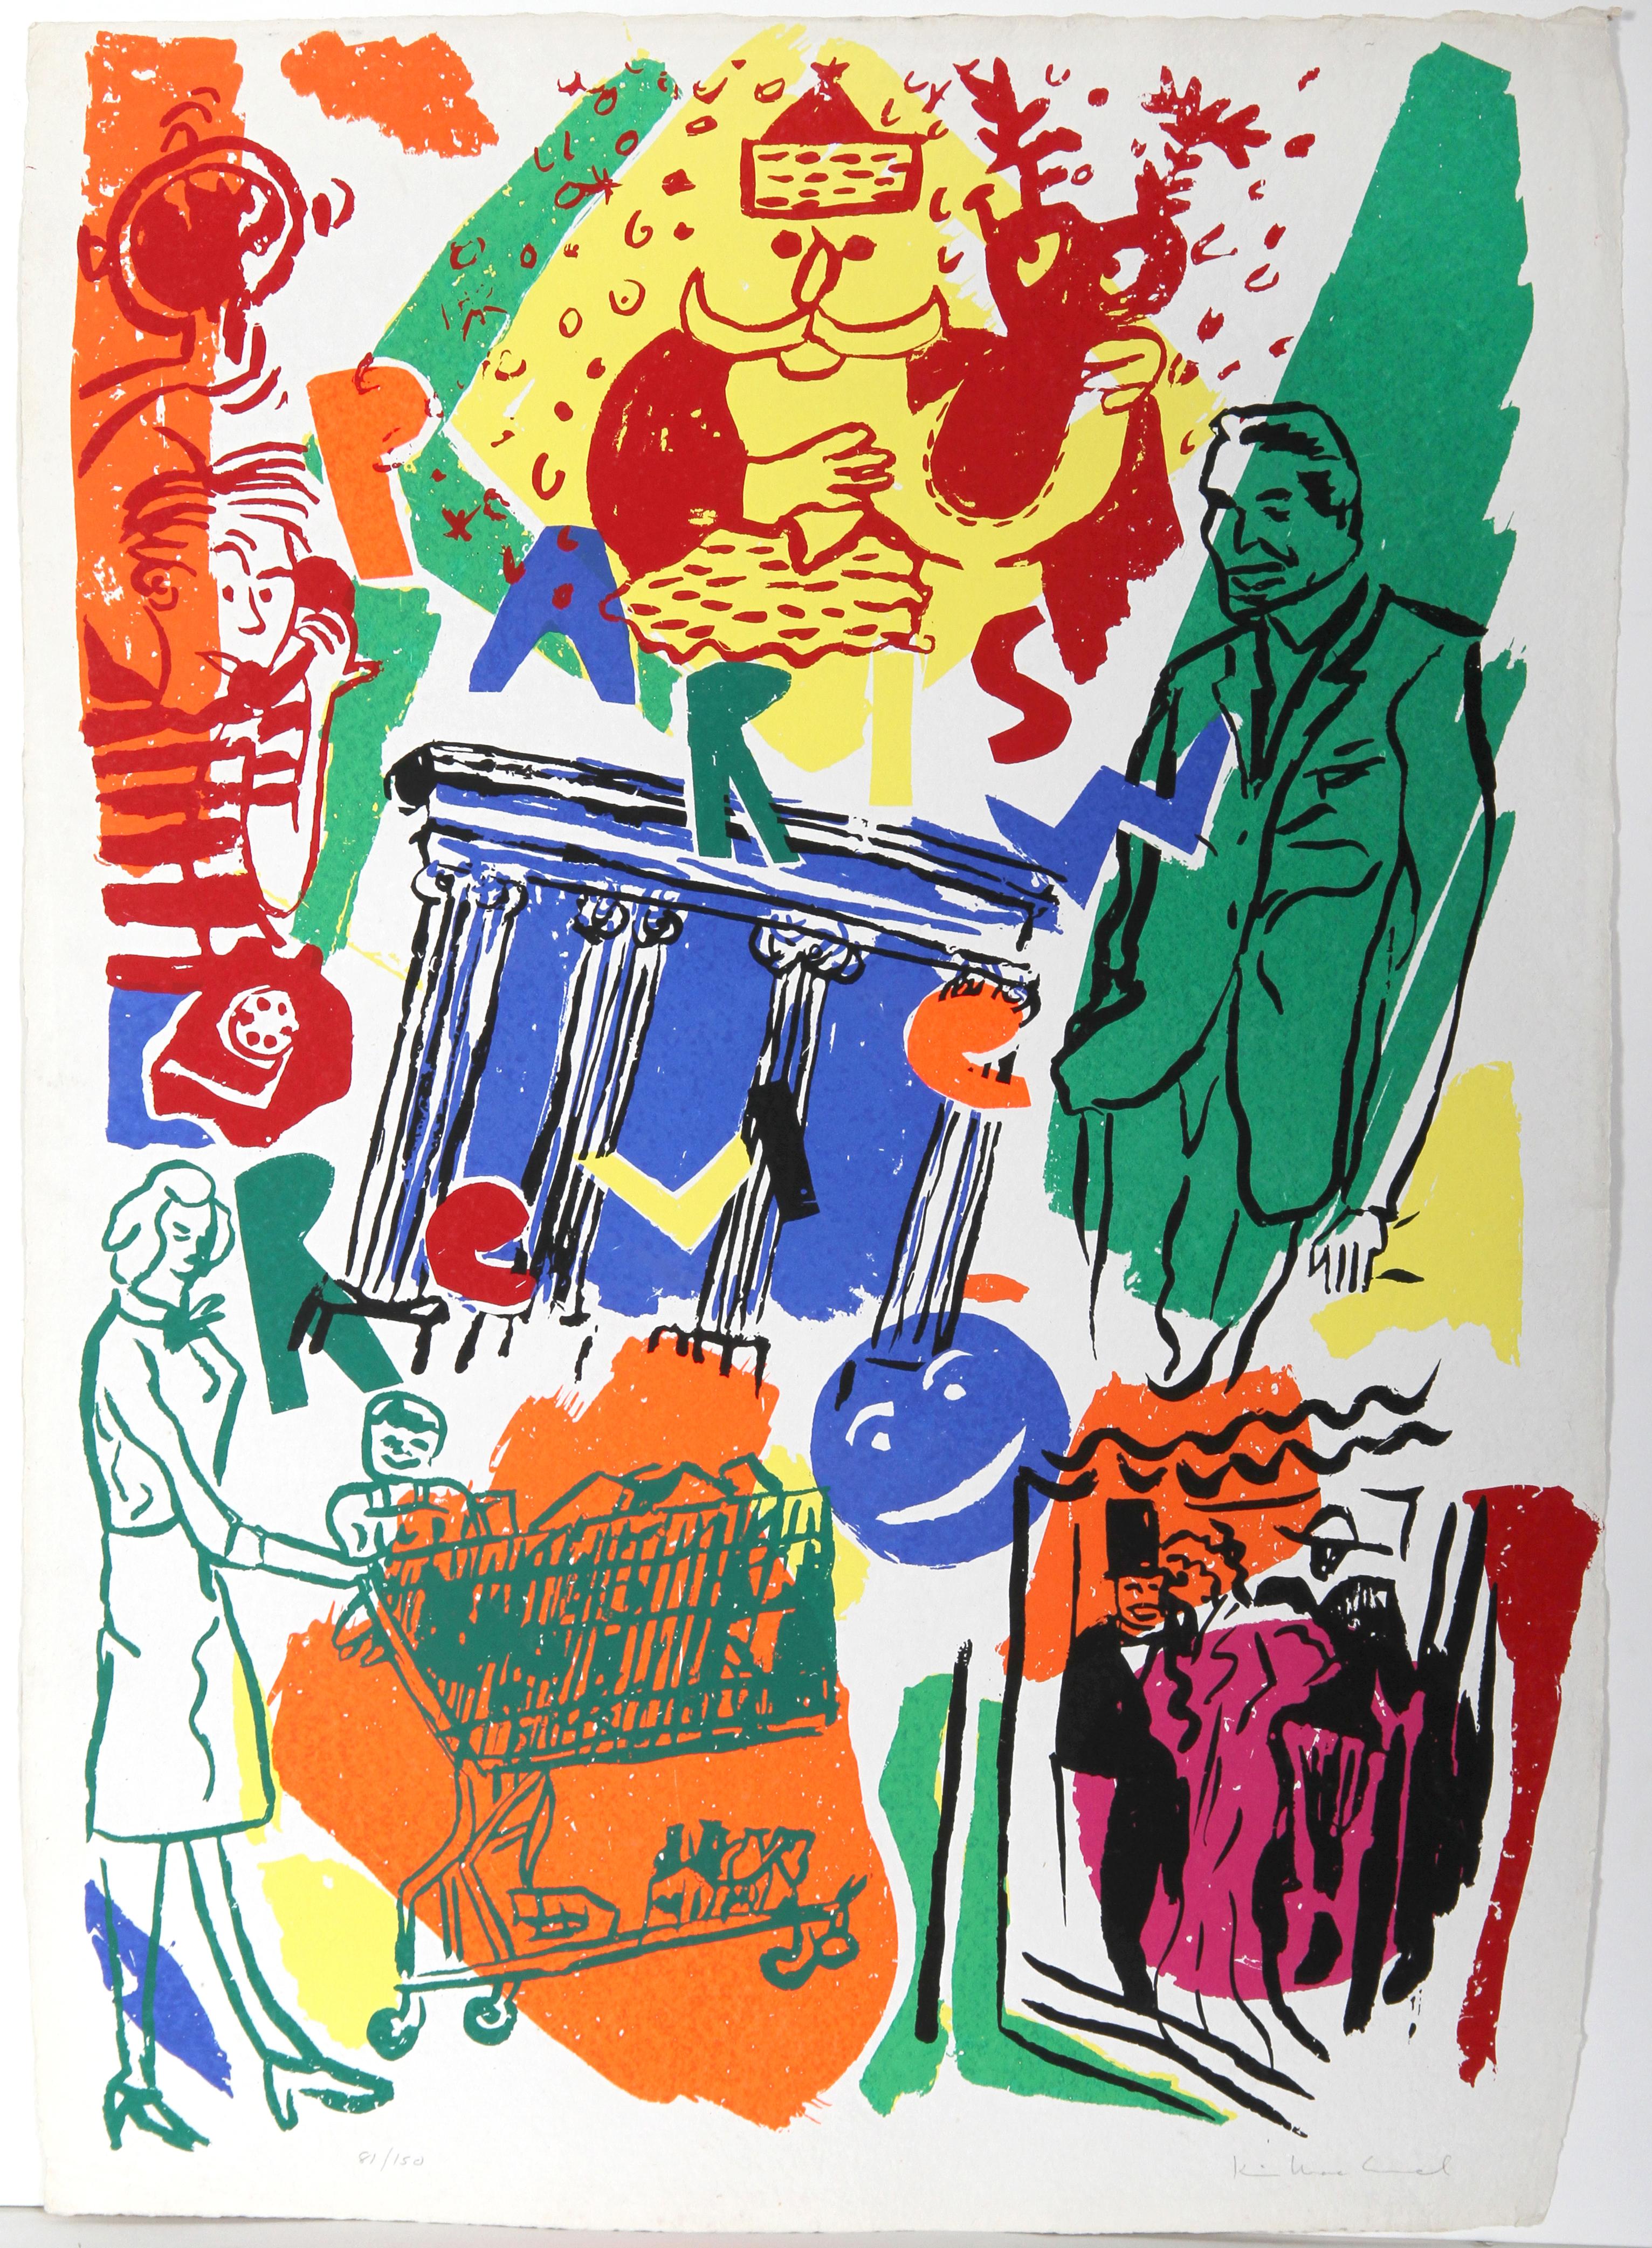 Artiste : Kim MacConnel, américain (1946 - )
Titre : Revue de Paris
Médium : Sérigraphie, signée et numérotée au crayon
Edition : 81/150
Taille : 42 x 23 in. (106,68 x 58,42 cm)